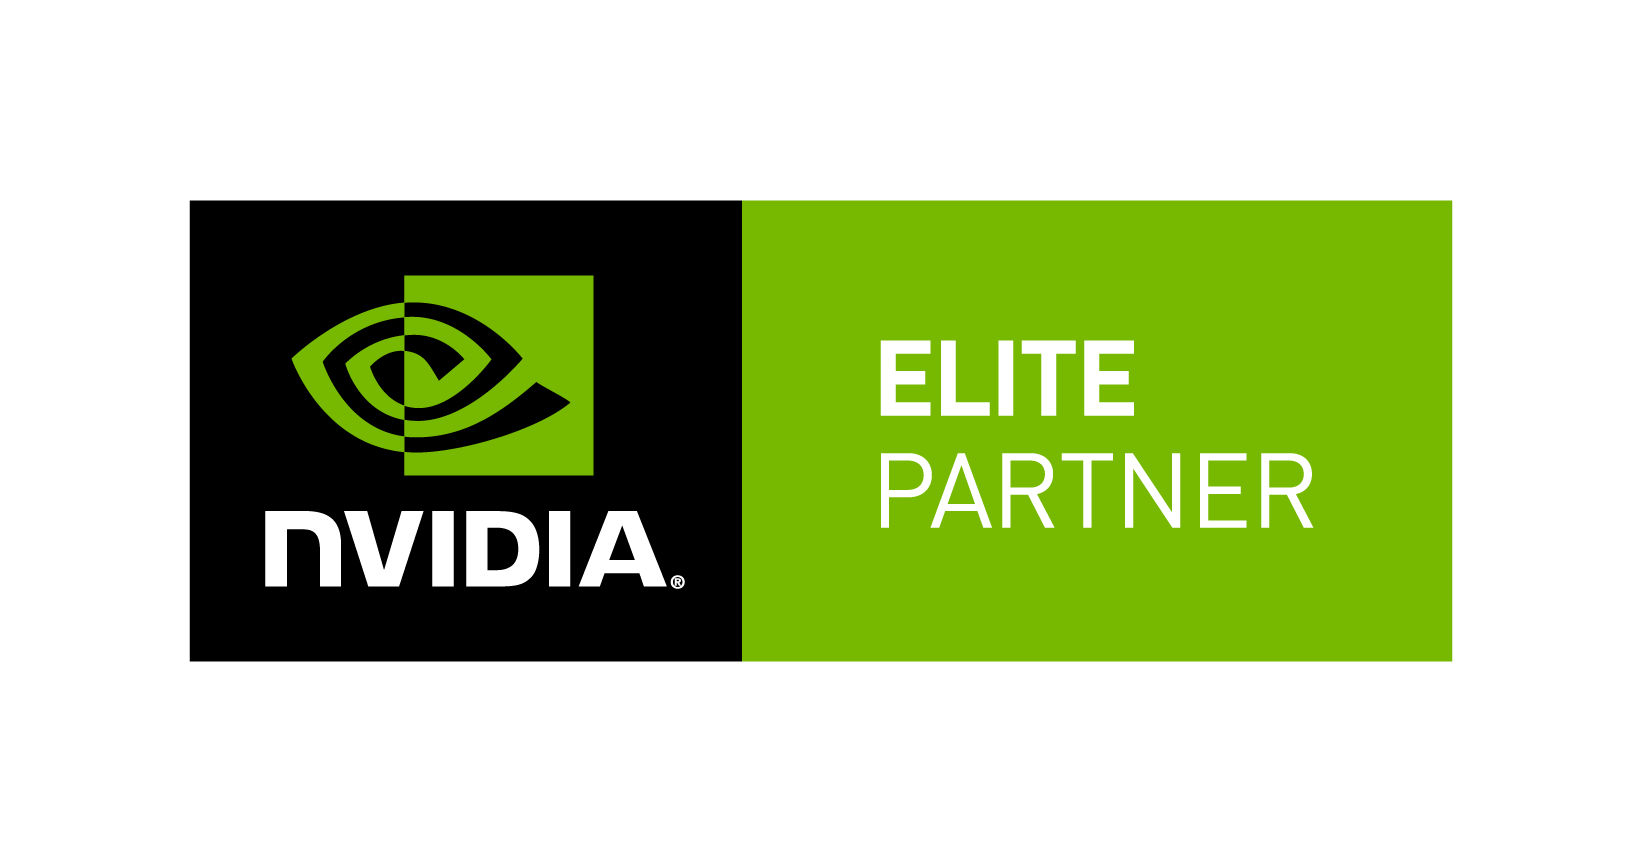 NVIDIA GPU Accelerated Servers For HPC